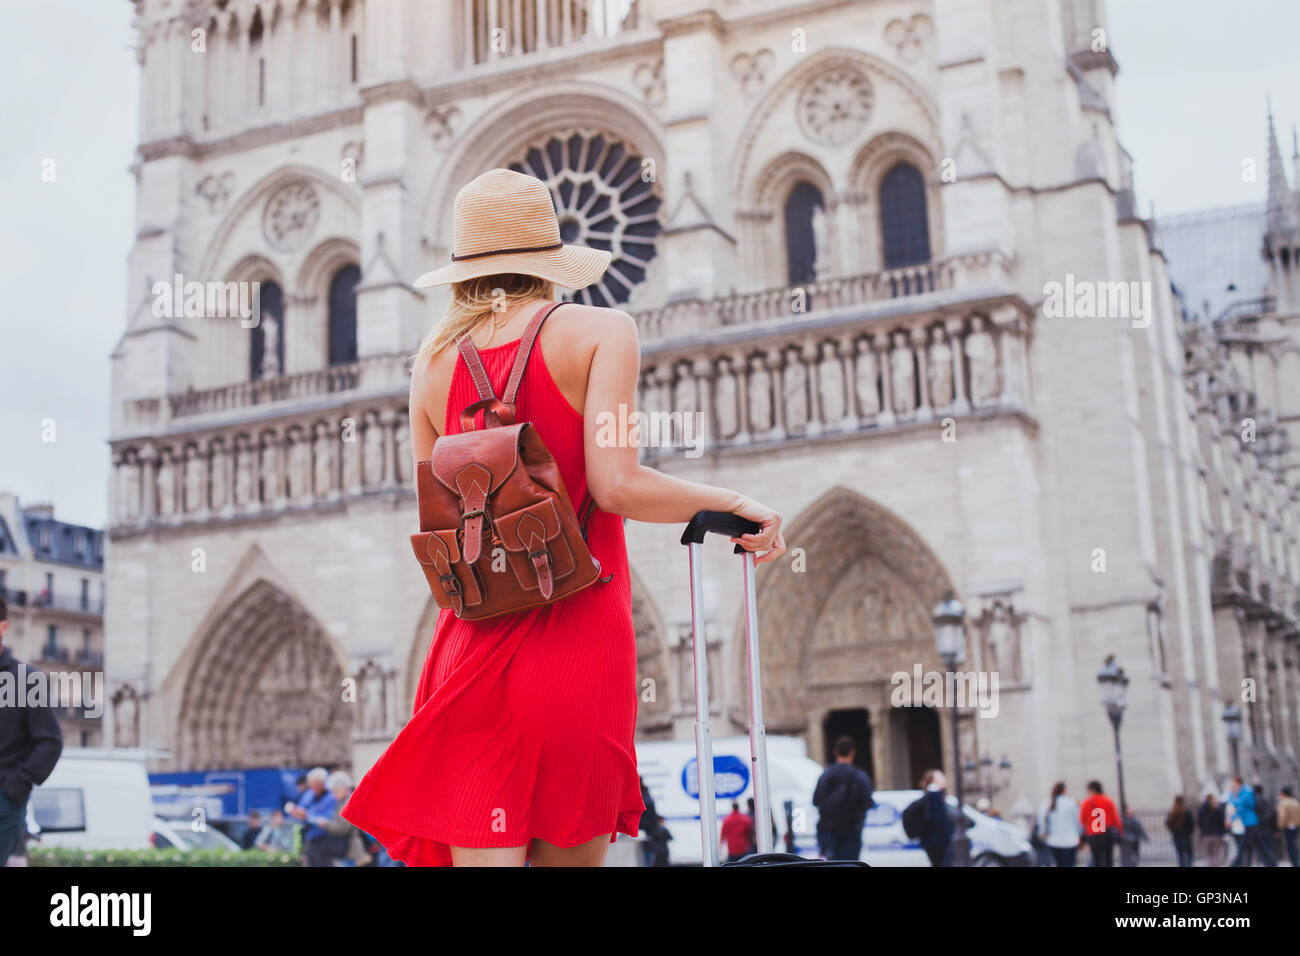 Reisen Sie in Europa, gotische Architektur der katholischen Kirche, touristischen Blick auf die Kathedrale Notre Dame in Paris, Frankreich Stockfoto